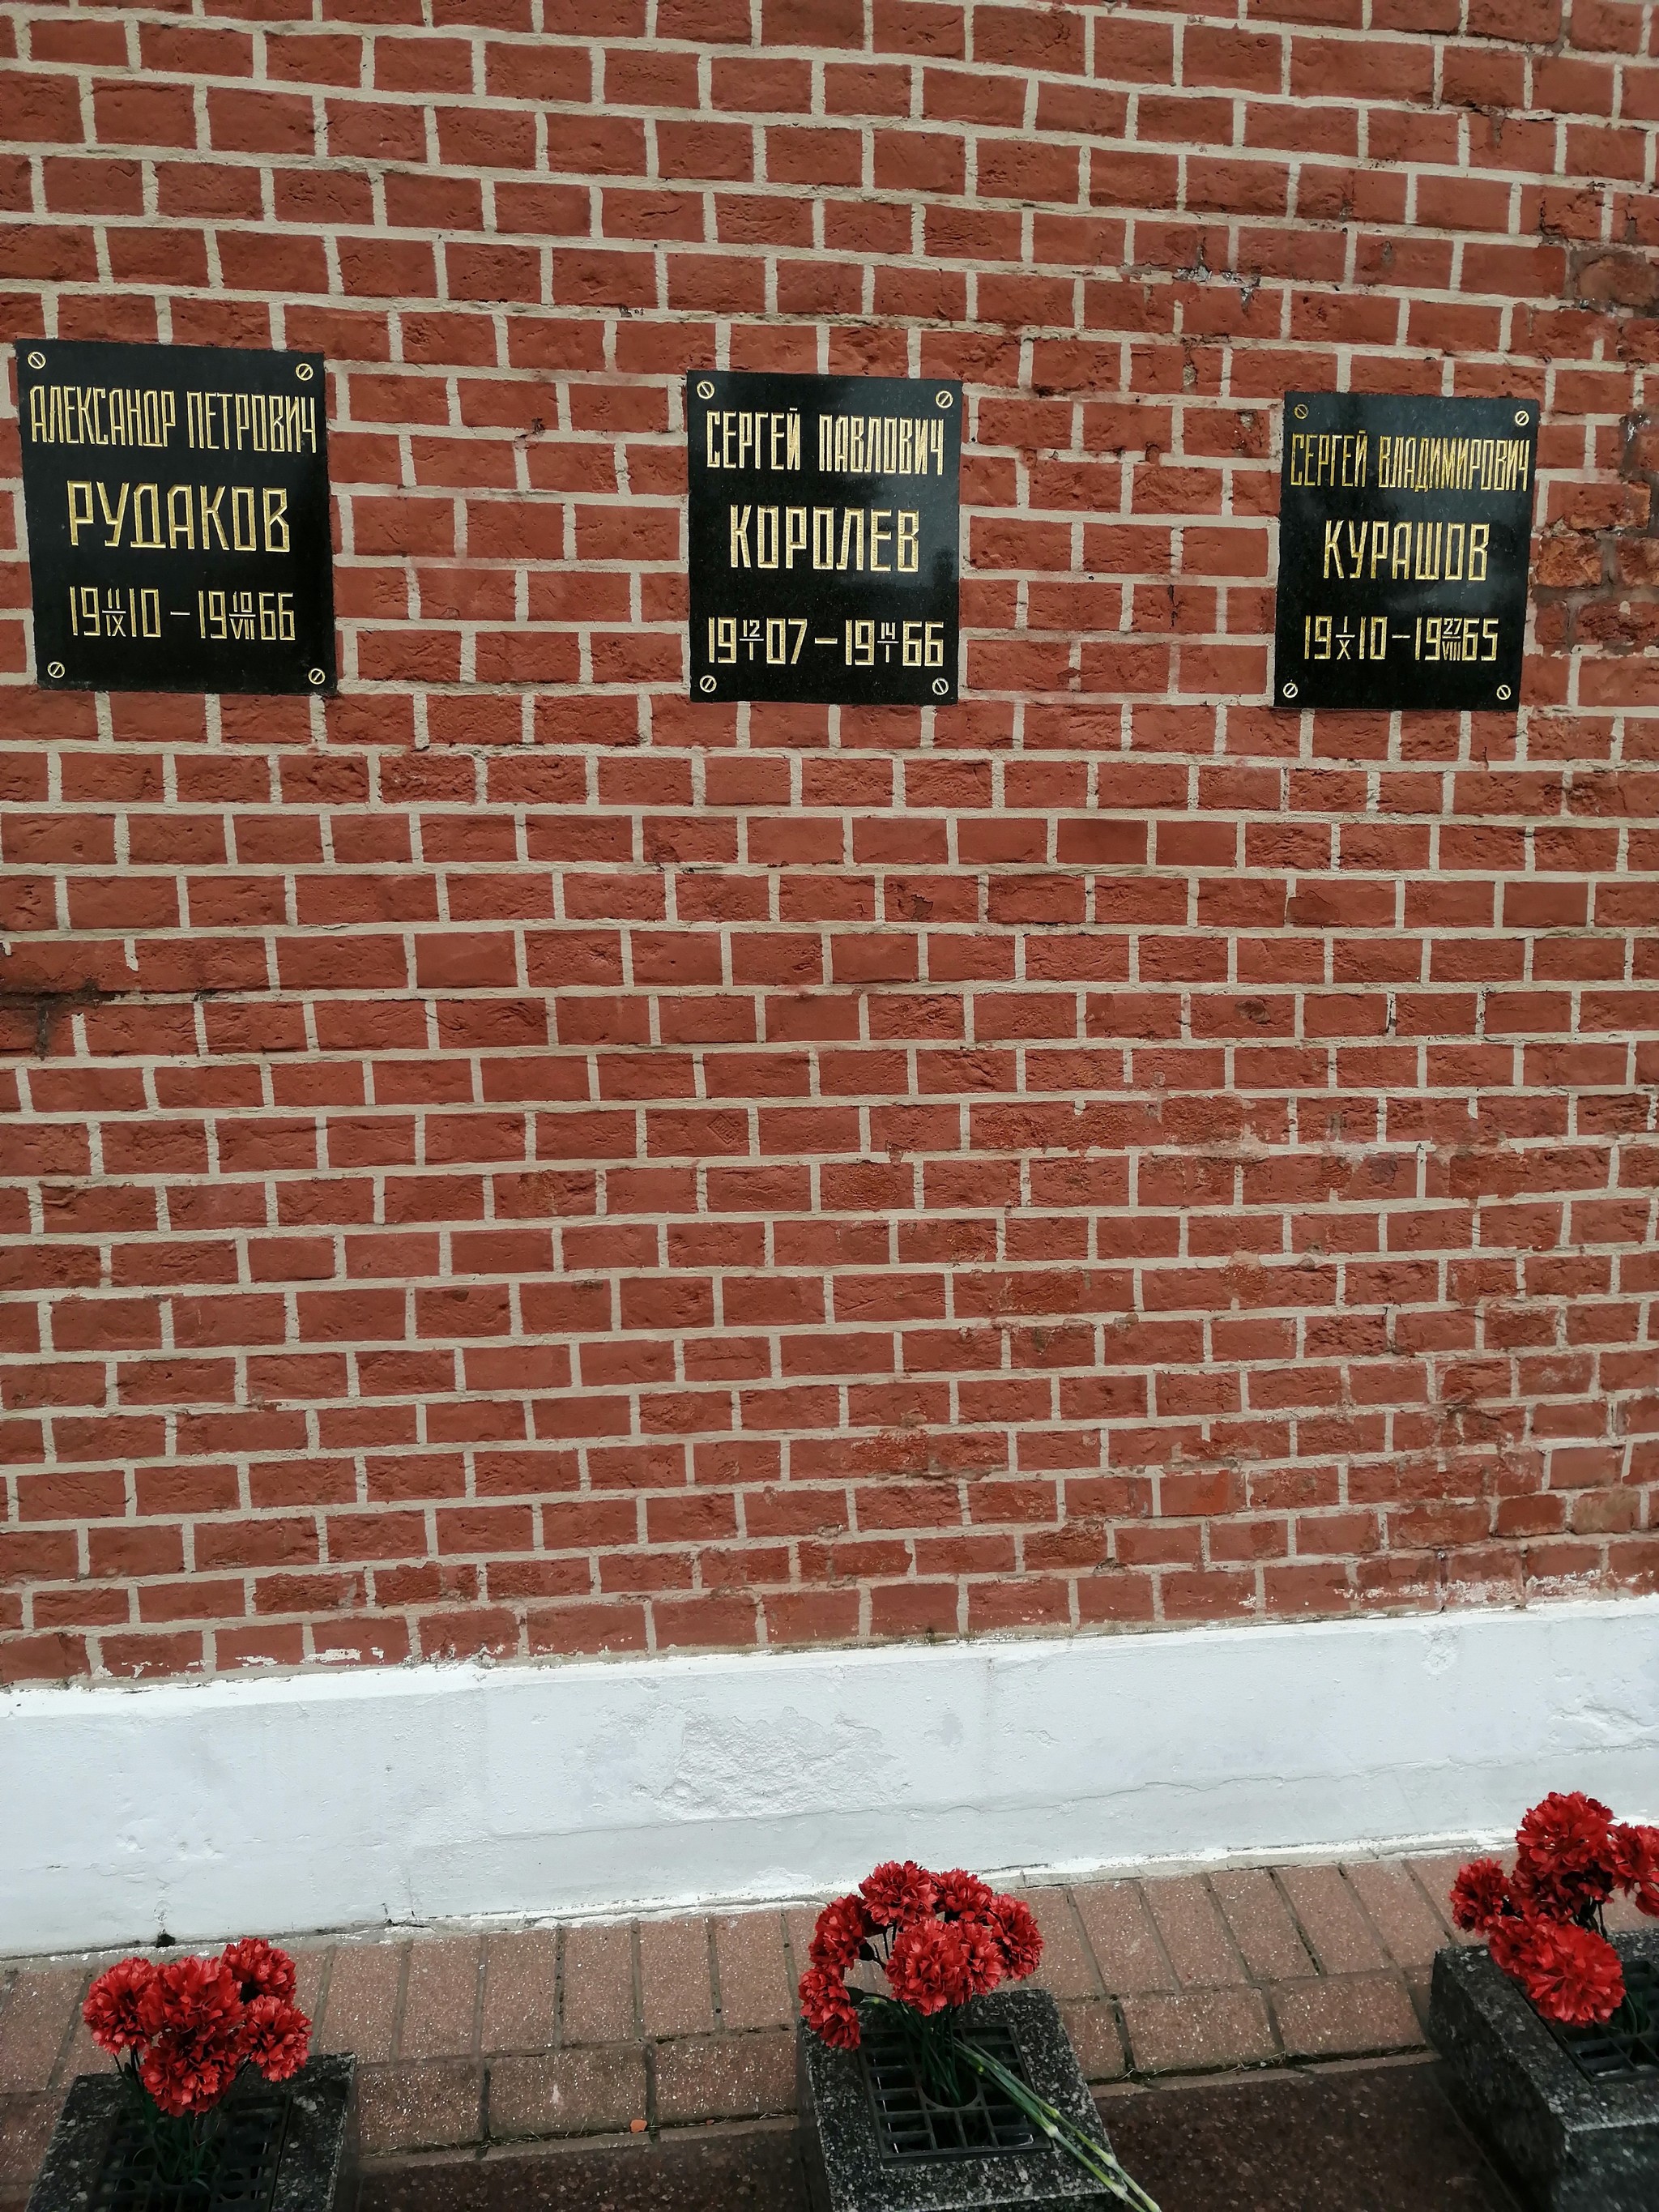 Кто похоронен у кремлевской стены в москве список фото и фамилии